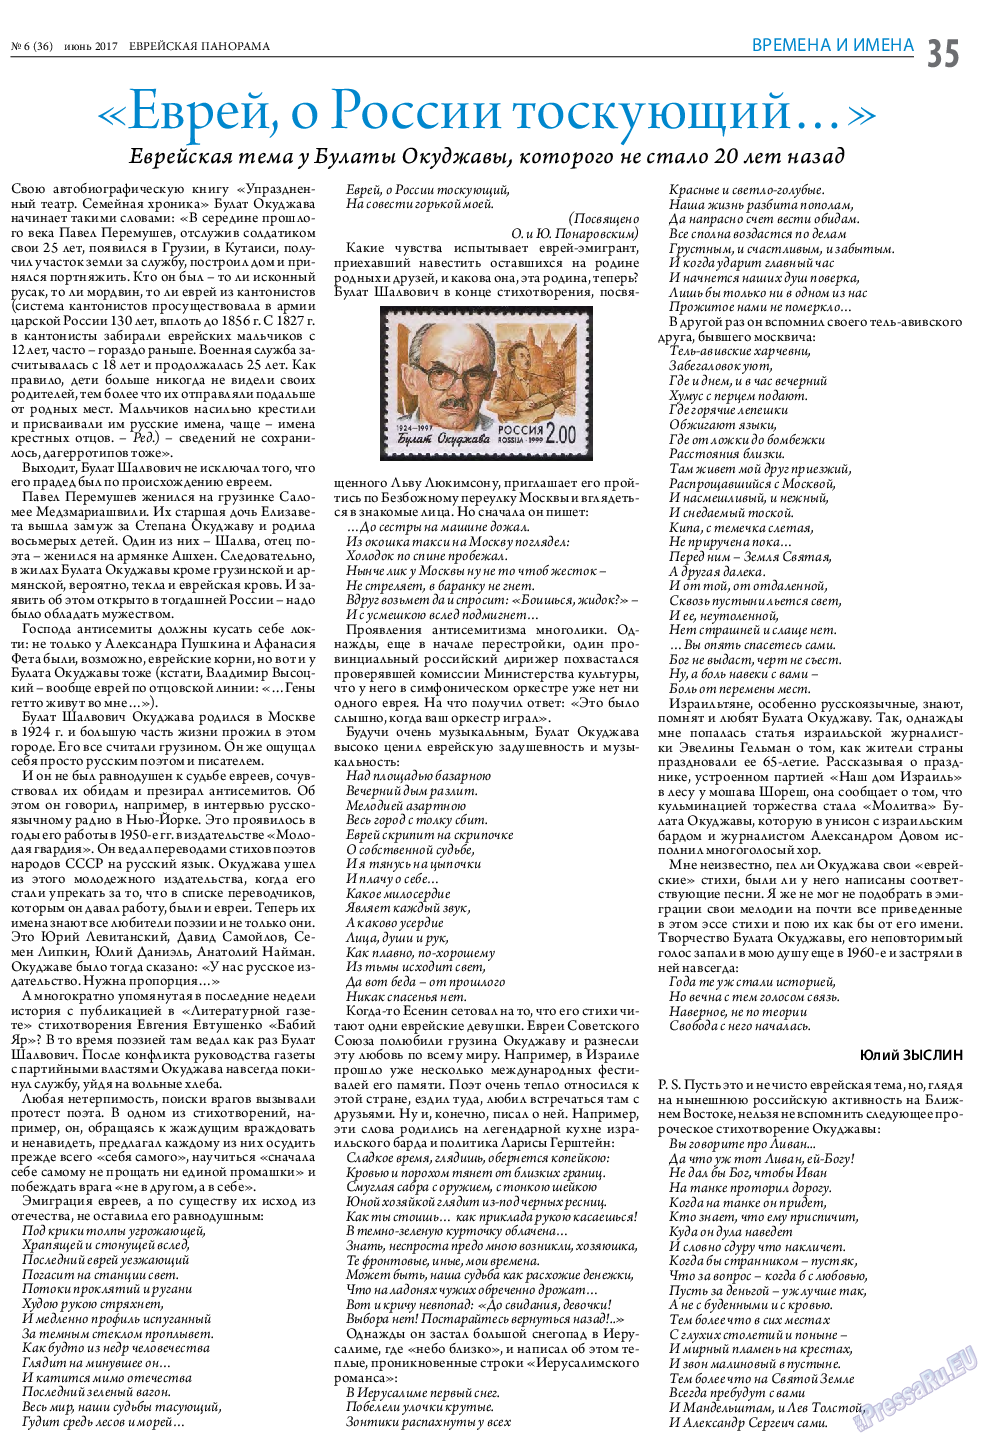 Еврейская панорама (газета). 2017 год, номер 6, стр. 35